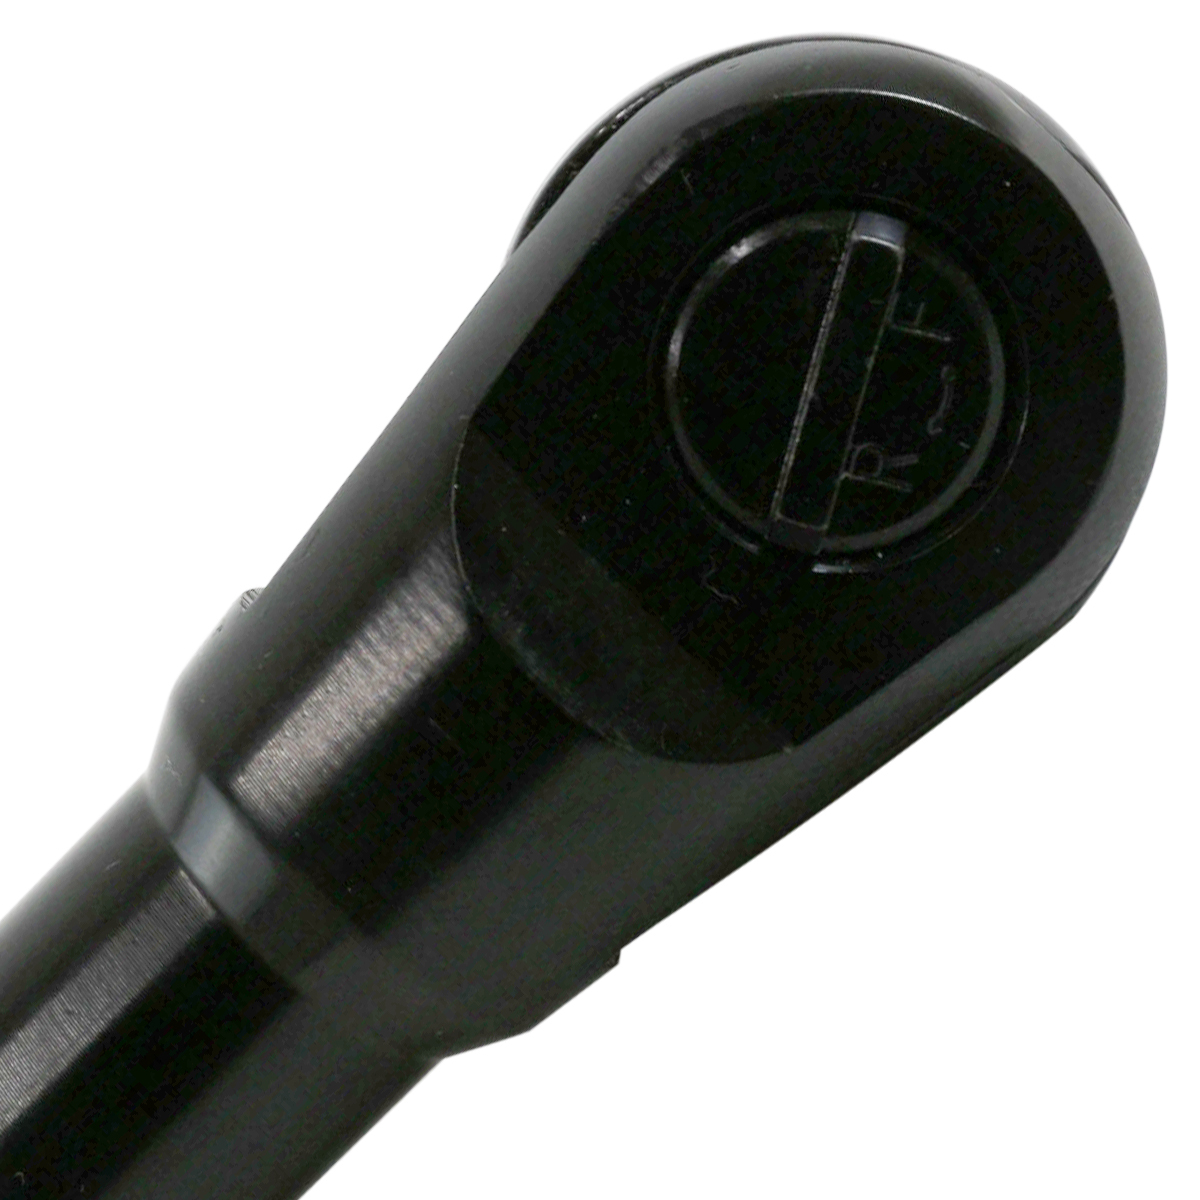  воздушный трещоточный гаечный ключ максимальный крутящий момент 82Nm разница включено угол 1/2 (12.7mm) мощный пневматический инструмент воздушный трещоточный гаечный ключ инструмент воздушный 